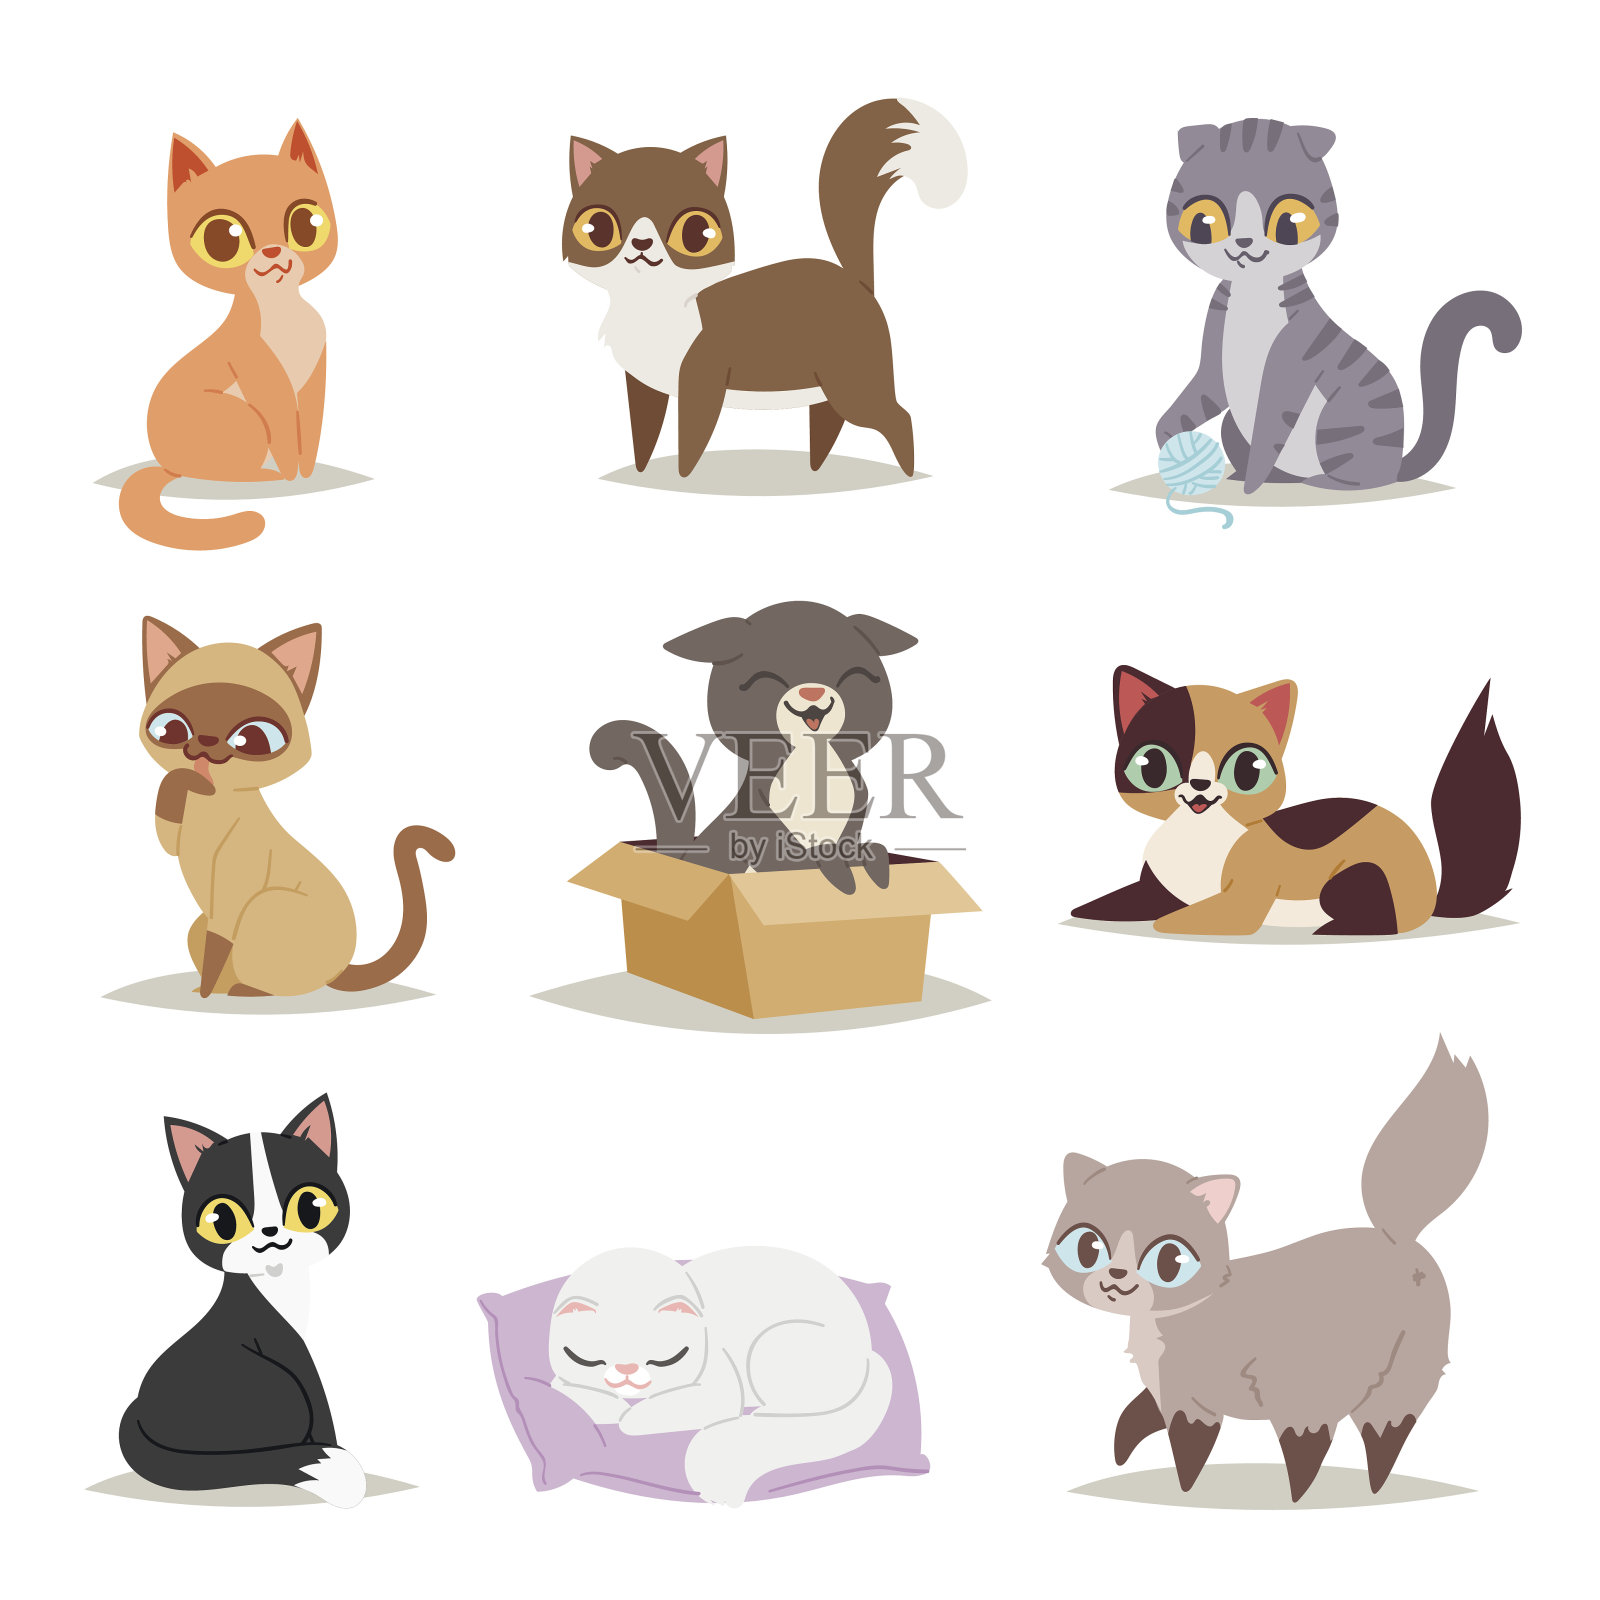 可爱的猫性格不同的姿态向量插画图片素材